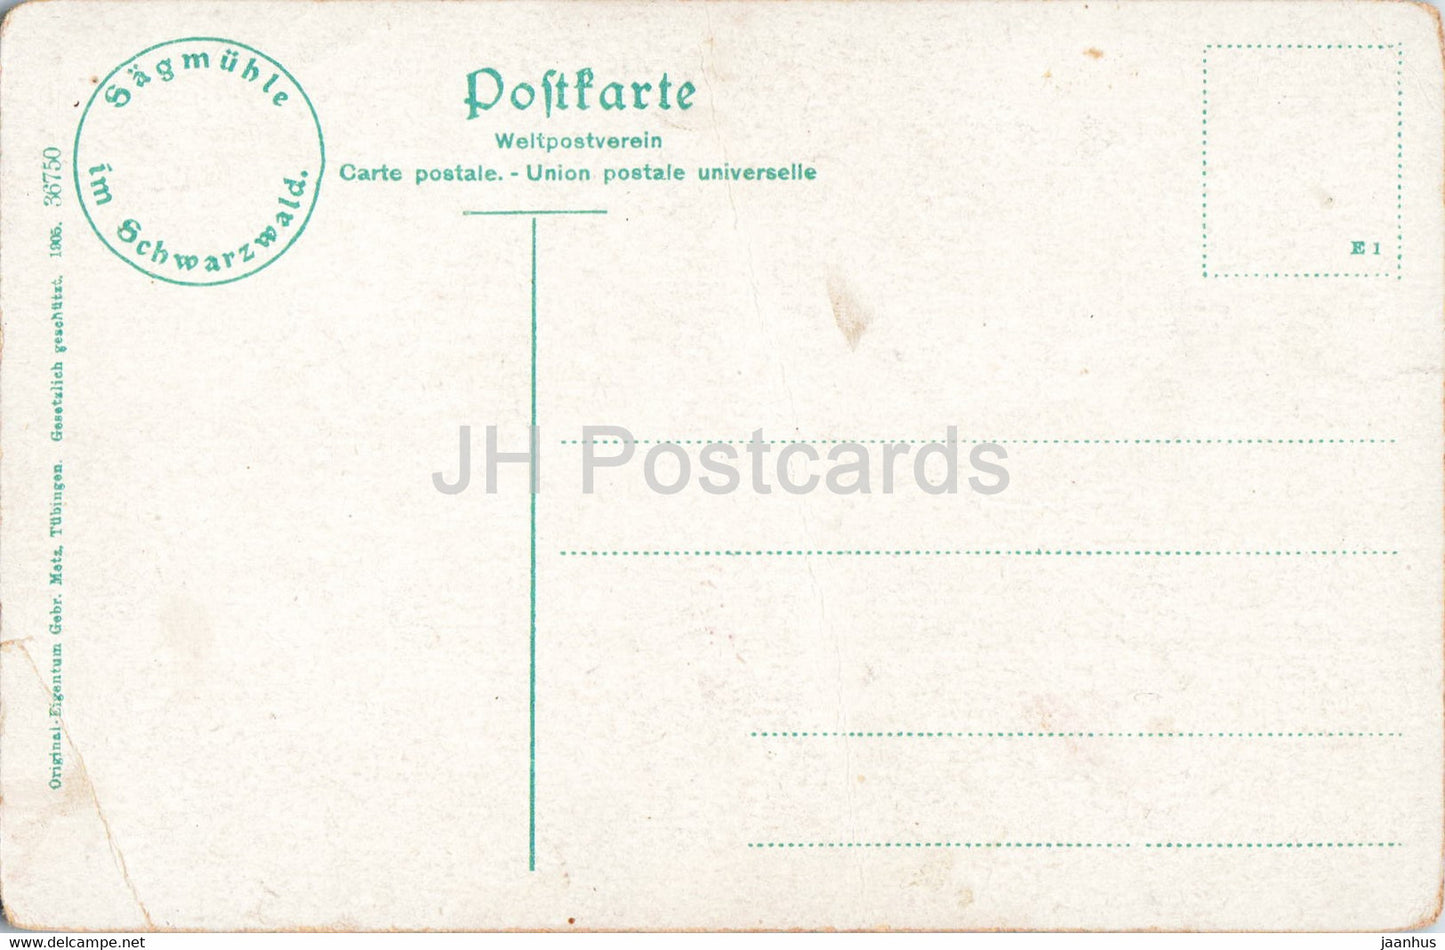 Sagmuhle im Schwarzwald - 36750 - carte postale ancienne - Allemagne - inutilisée